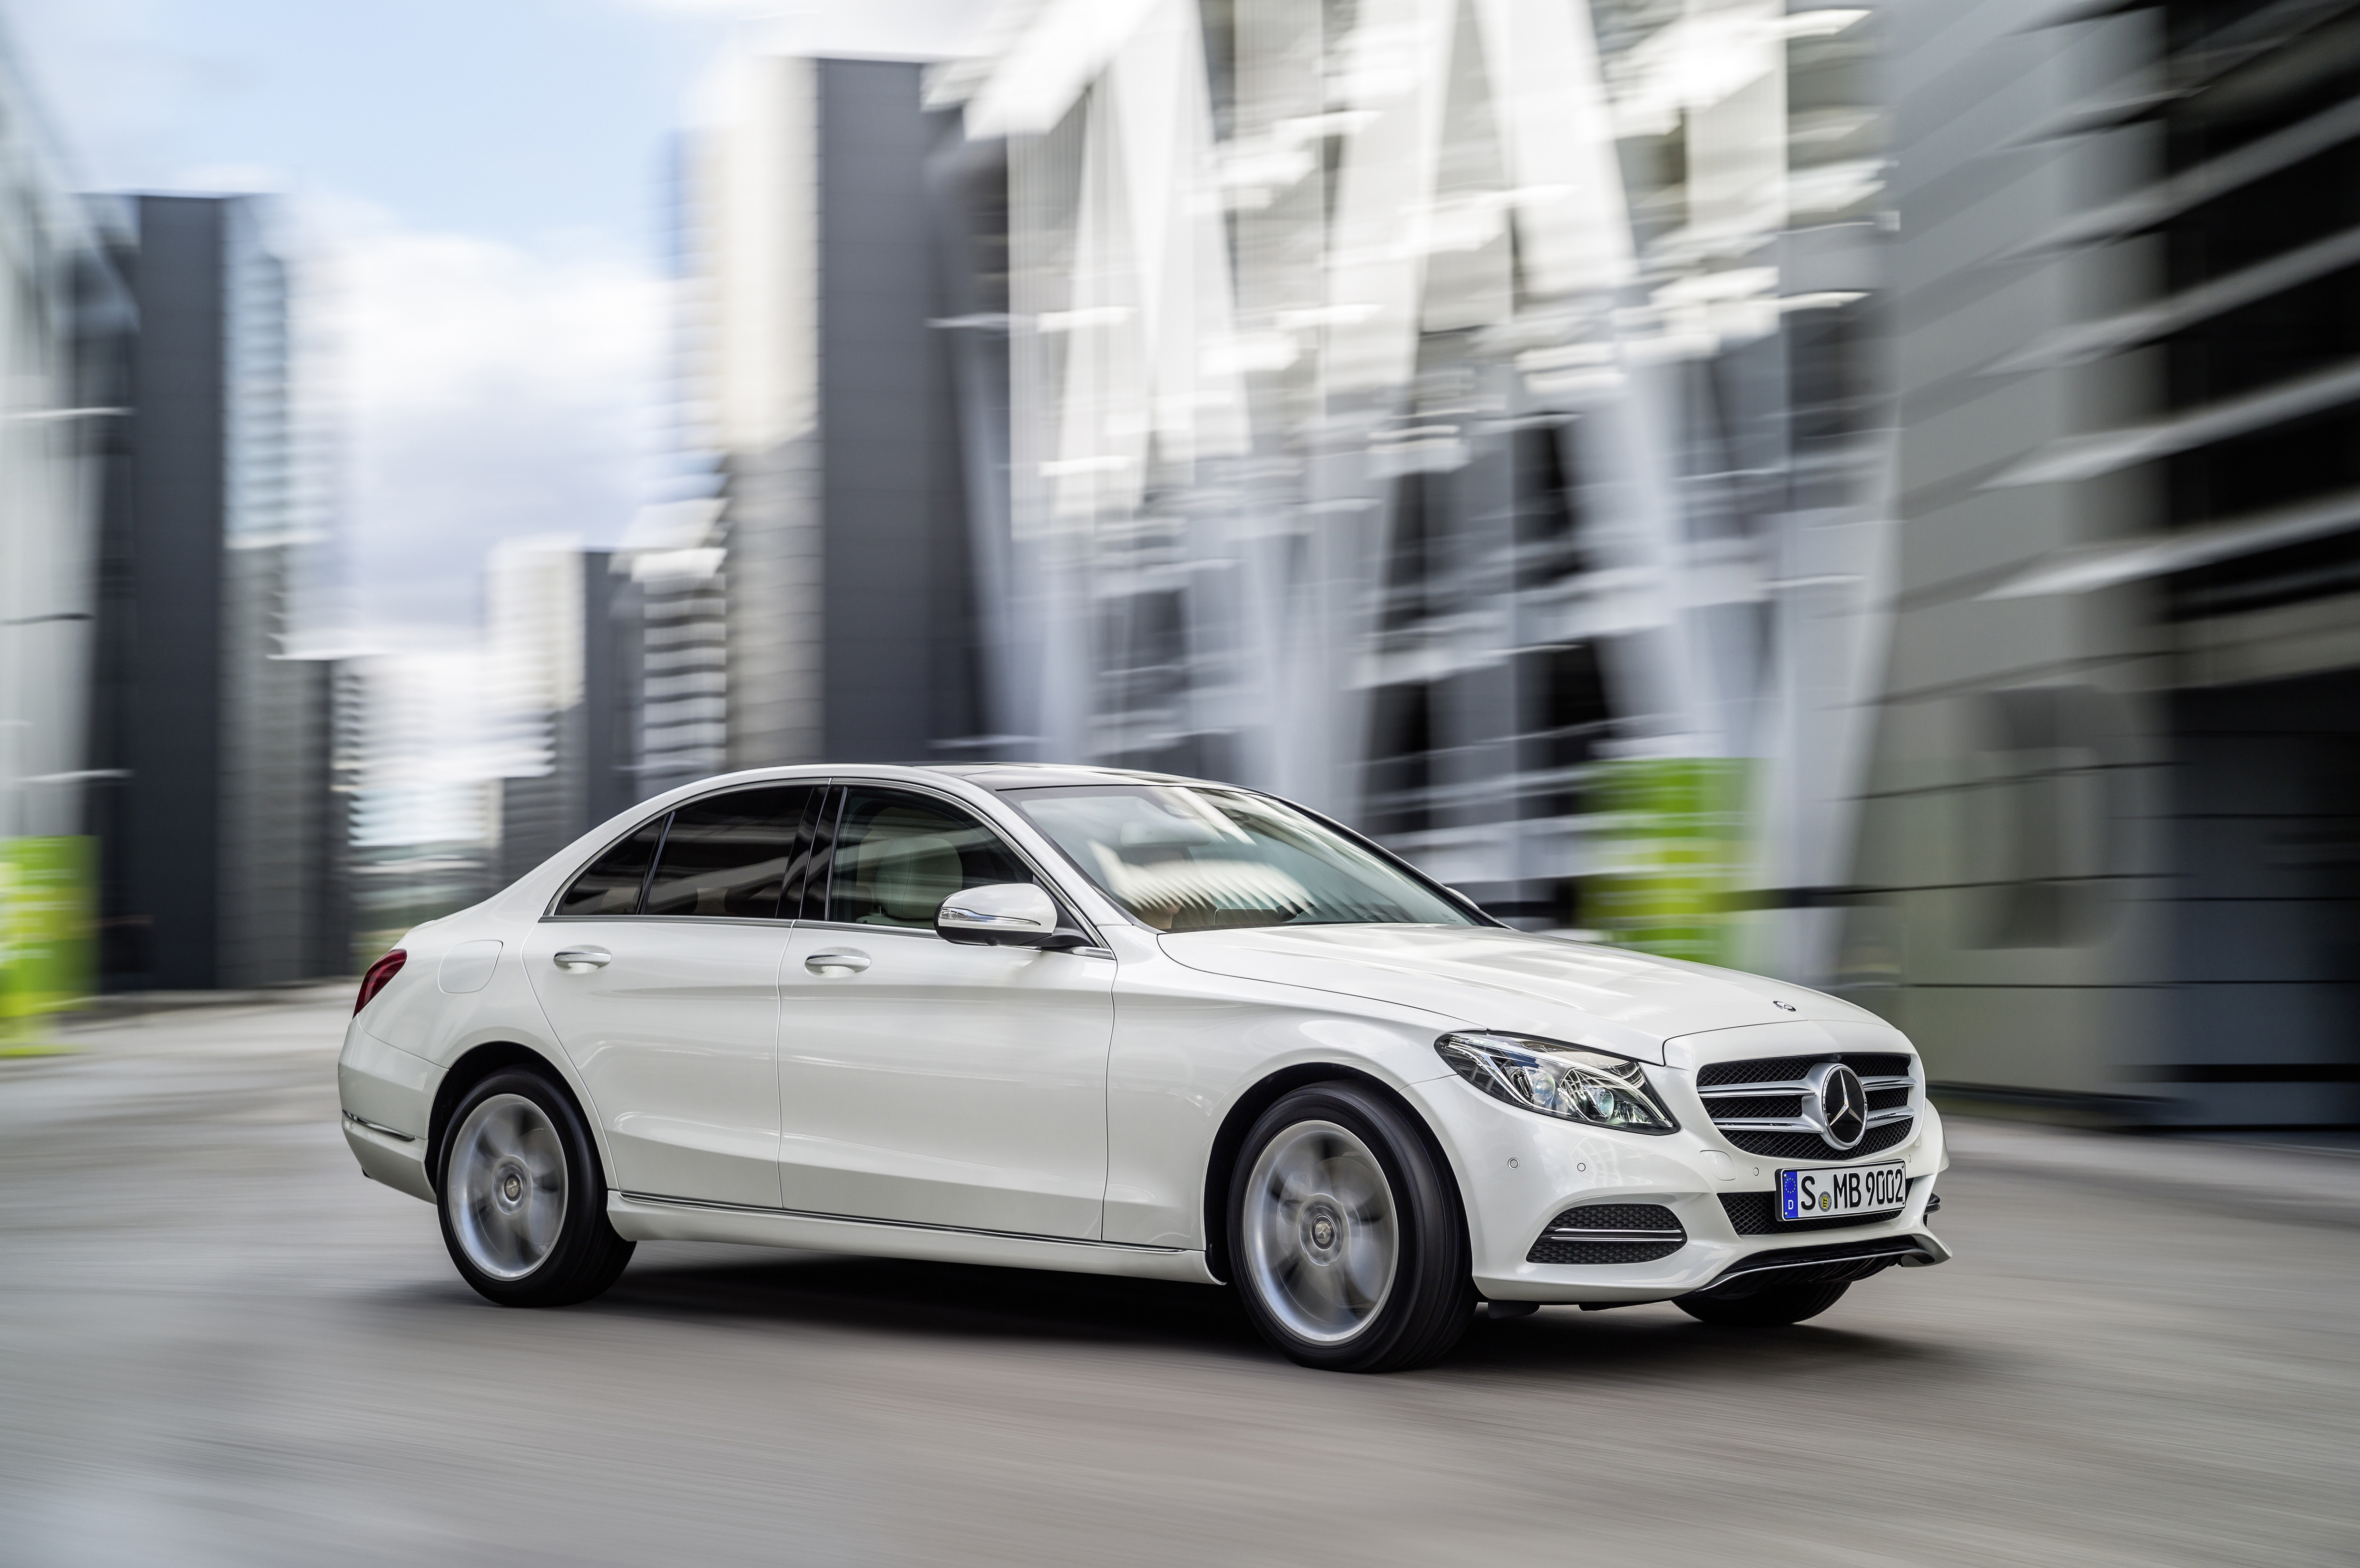 Новый с класс в россии. Mercedes-Benz c-class 2015. Mercedes-Benz c-class 2014. Mercedes Benz c klasse 2014. Мерседес Бенц ц класс 2015 года.